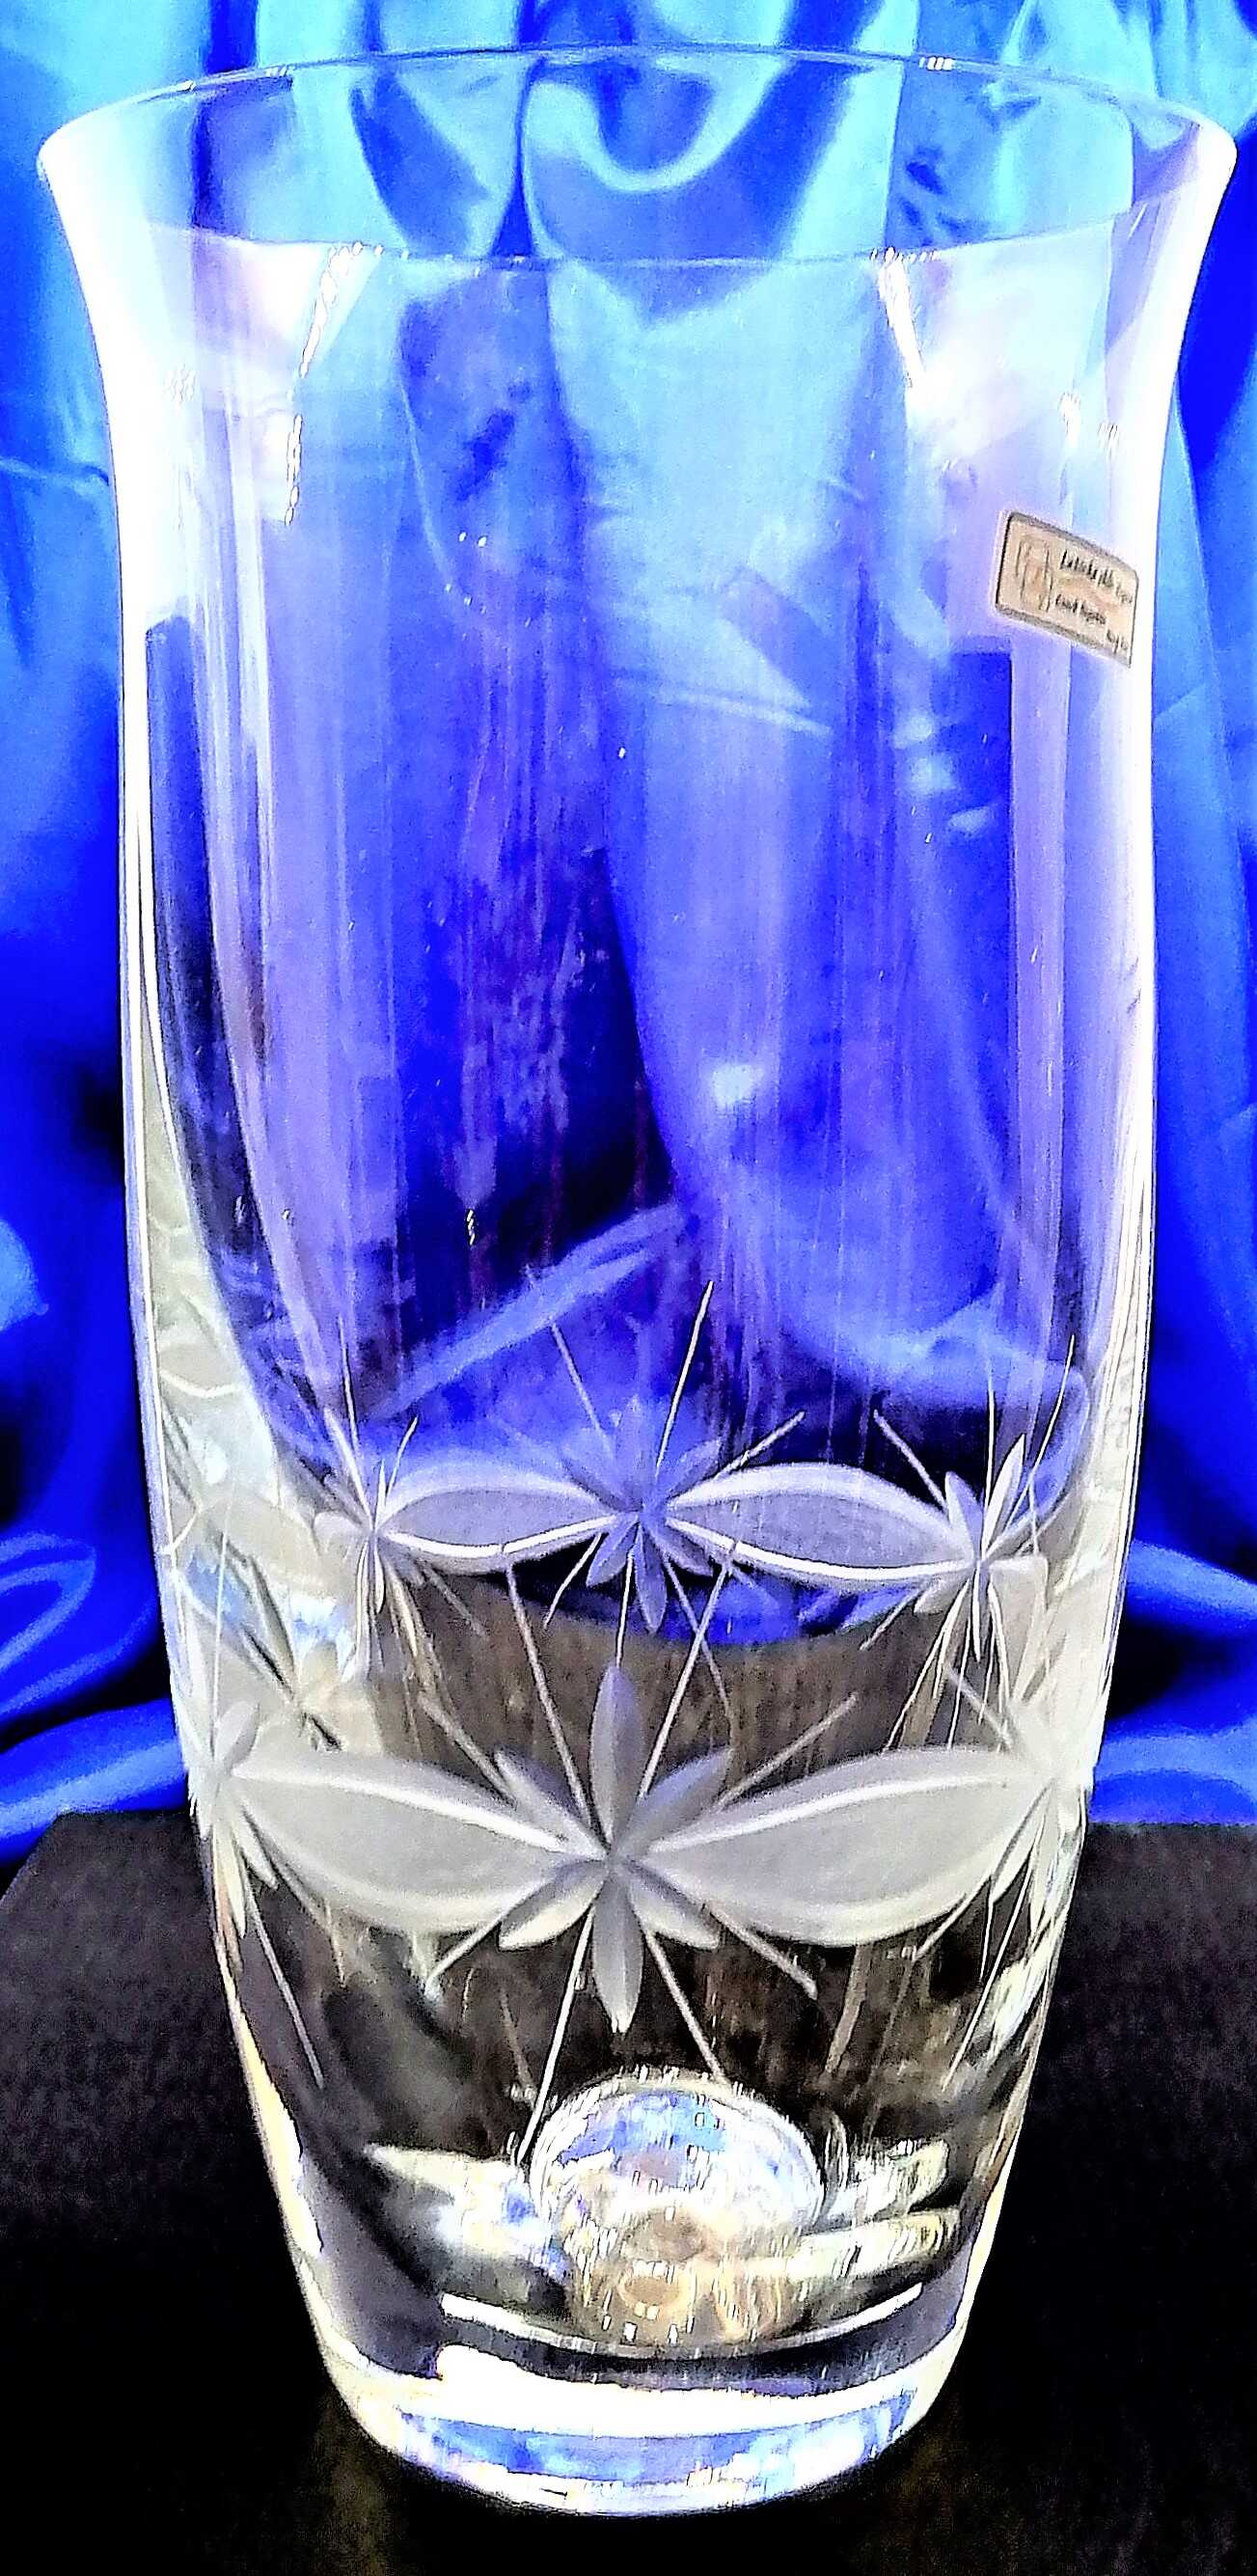 LsG-Kristall Vase Hand geschliffen Kristallglas Kante WA-138 228 x 120 mm 1 Stück.